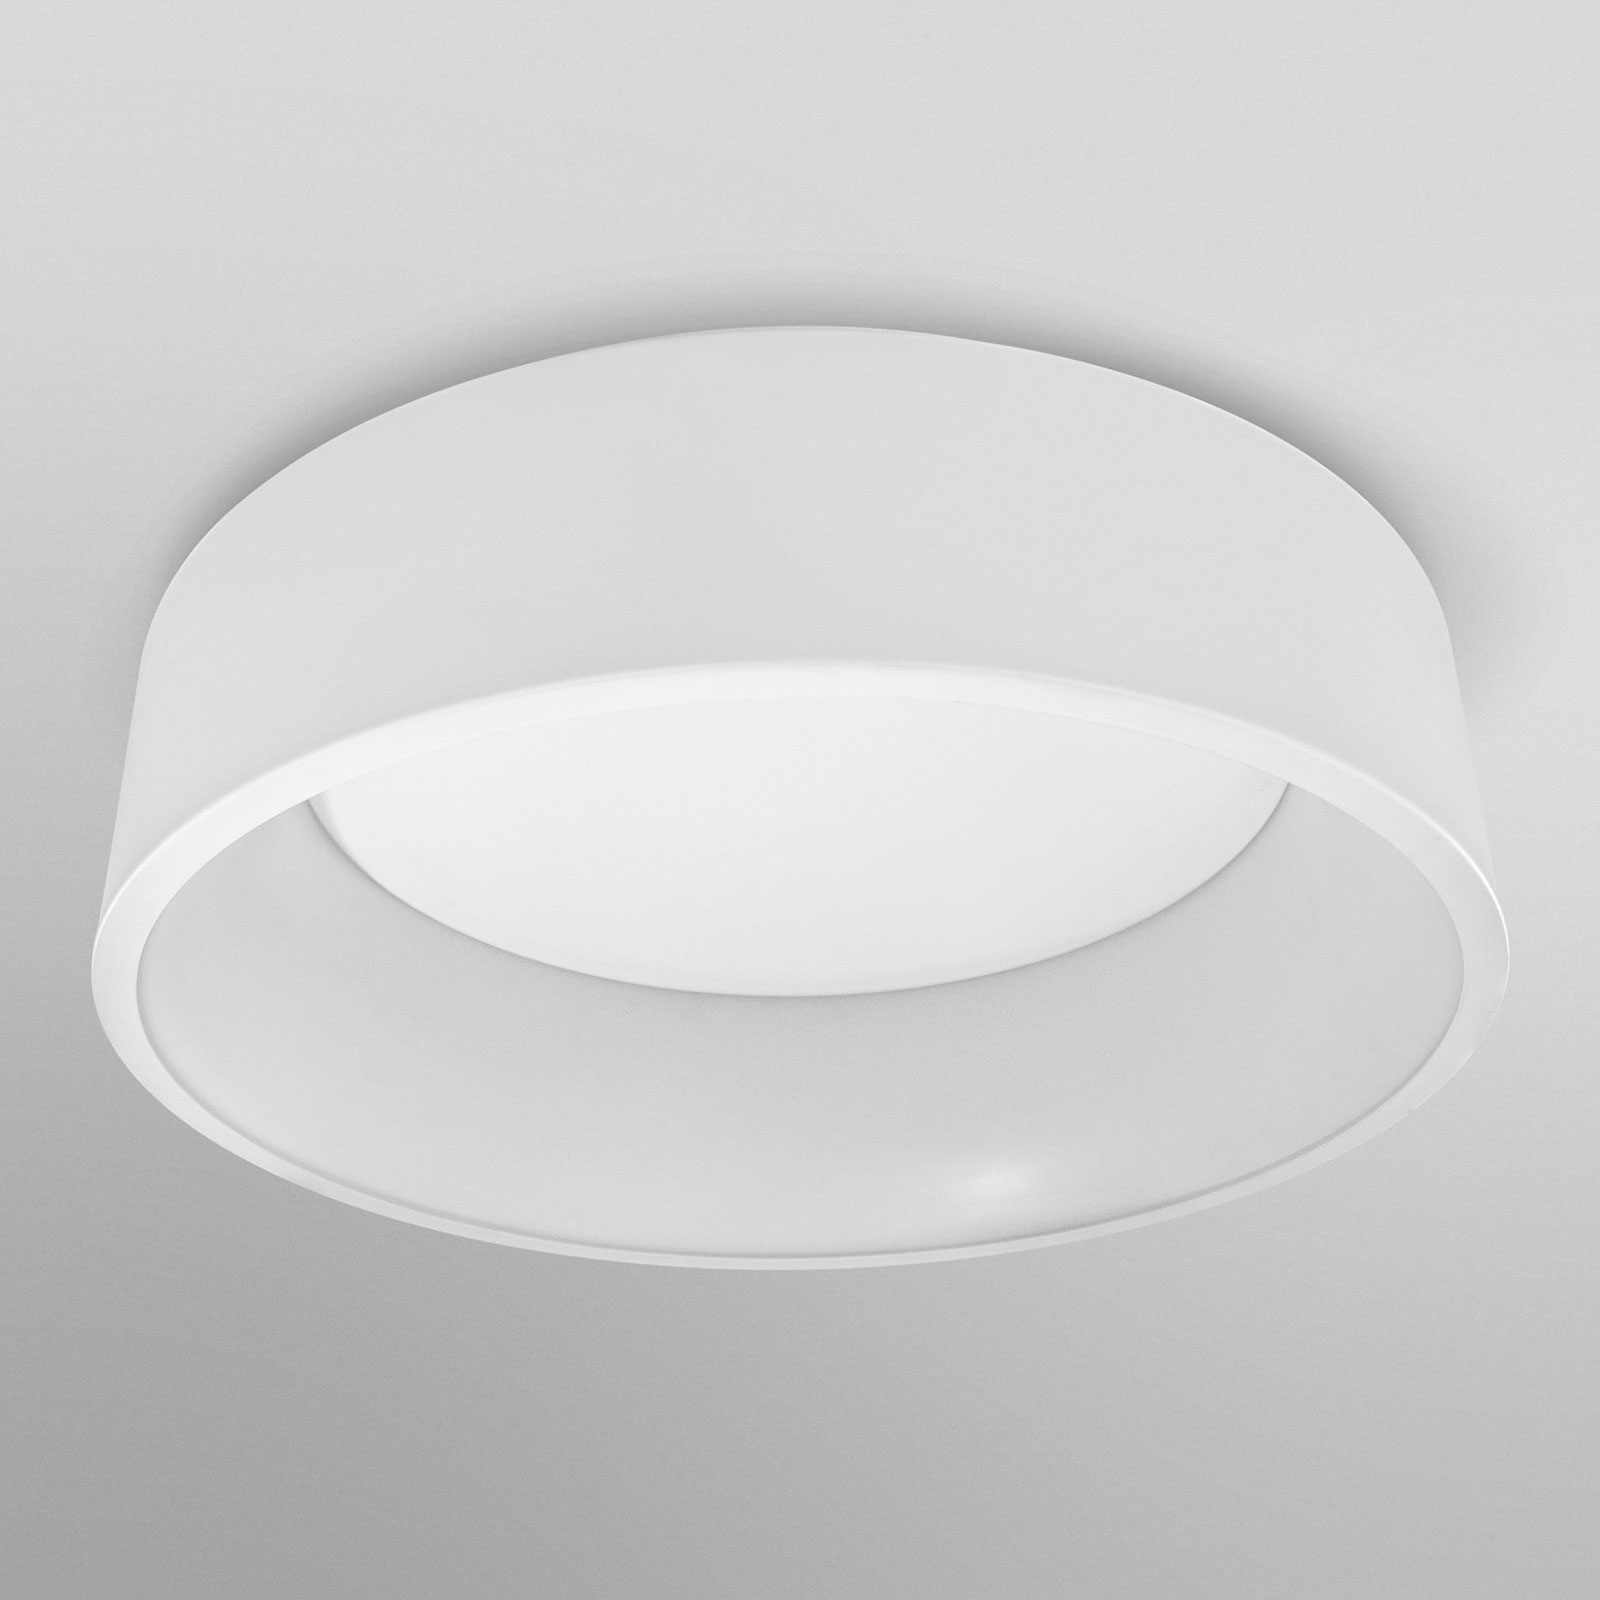 LEDVANCE SMART+ WiFi Orbis Cylinder CCT 45 cm hvit